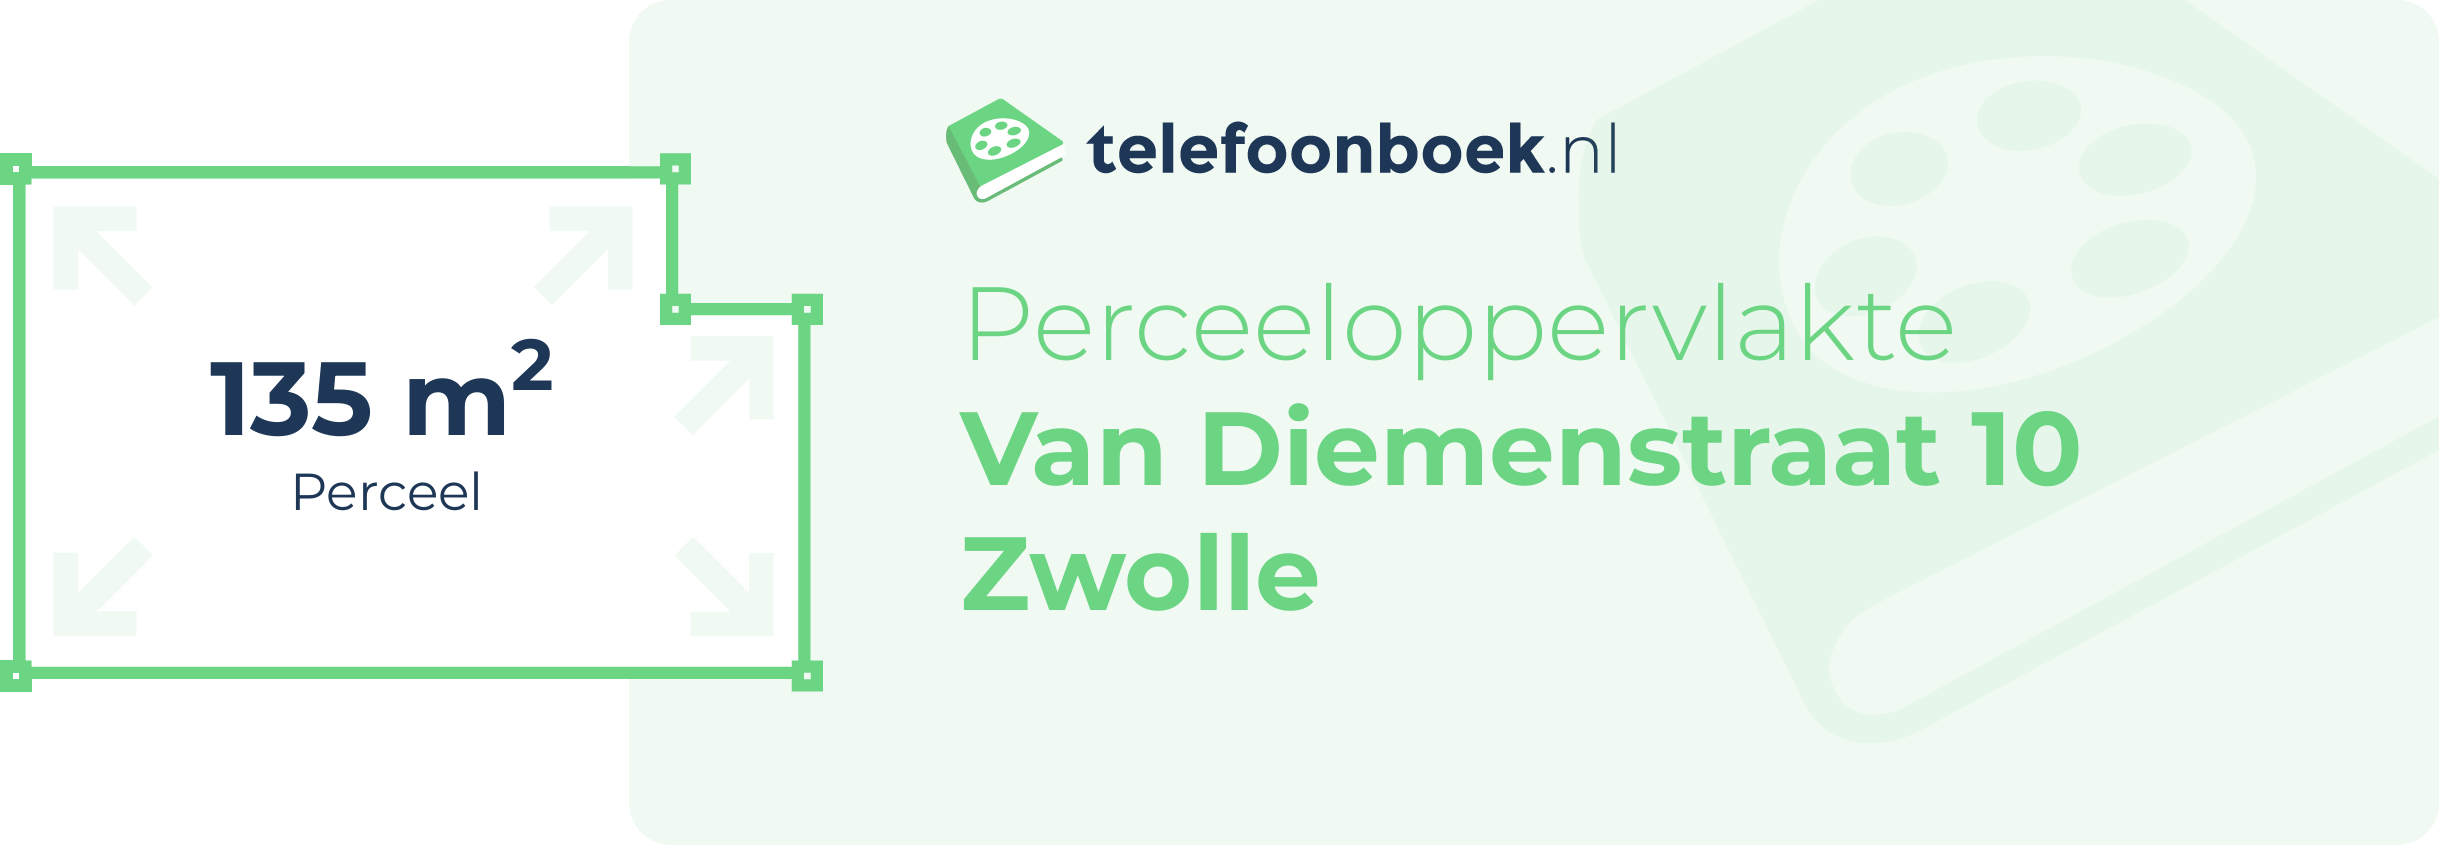 Perceeloppervlakte Van Diemenstraat 10 Zwolle